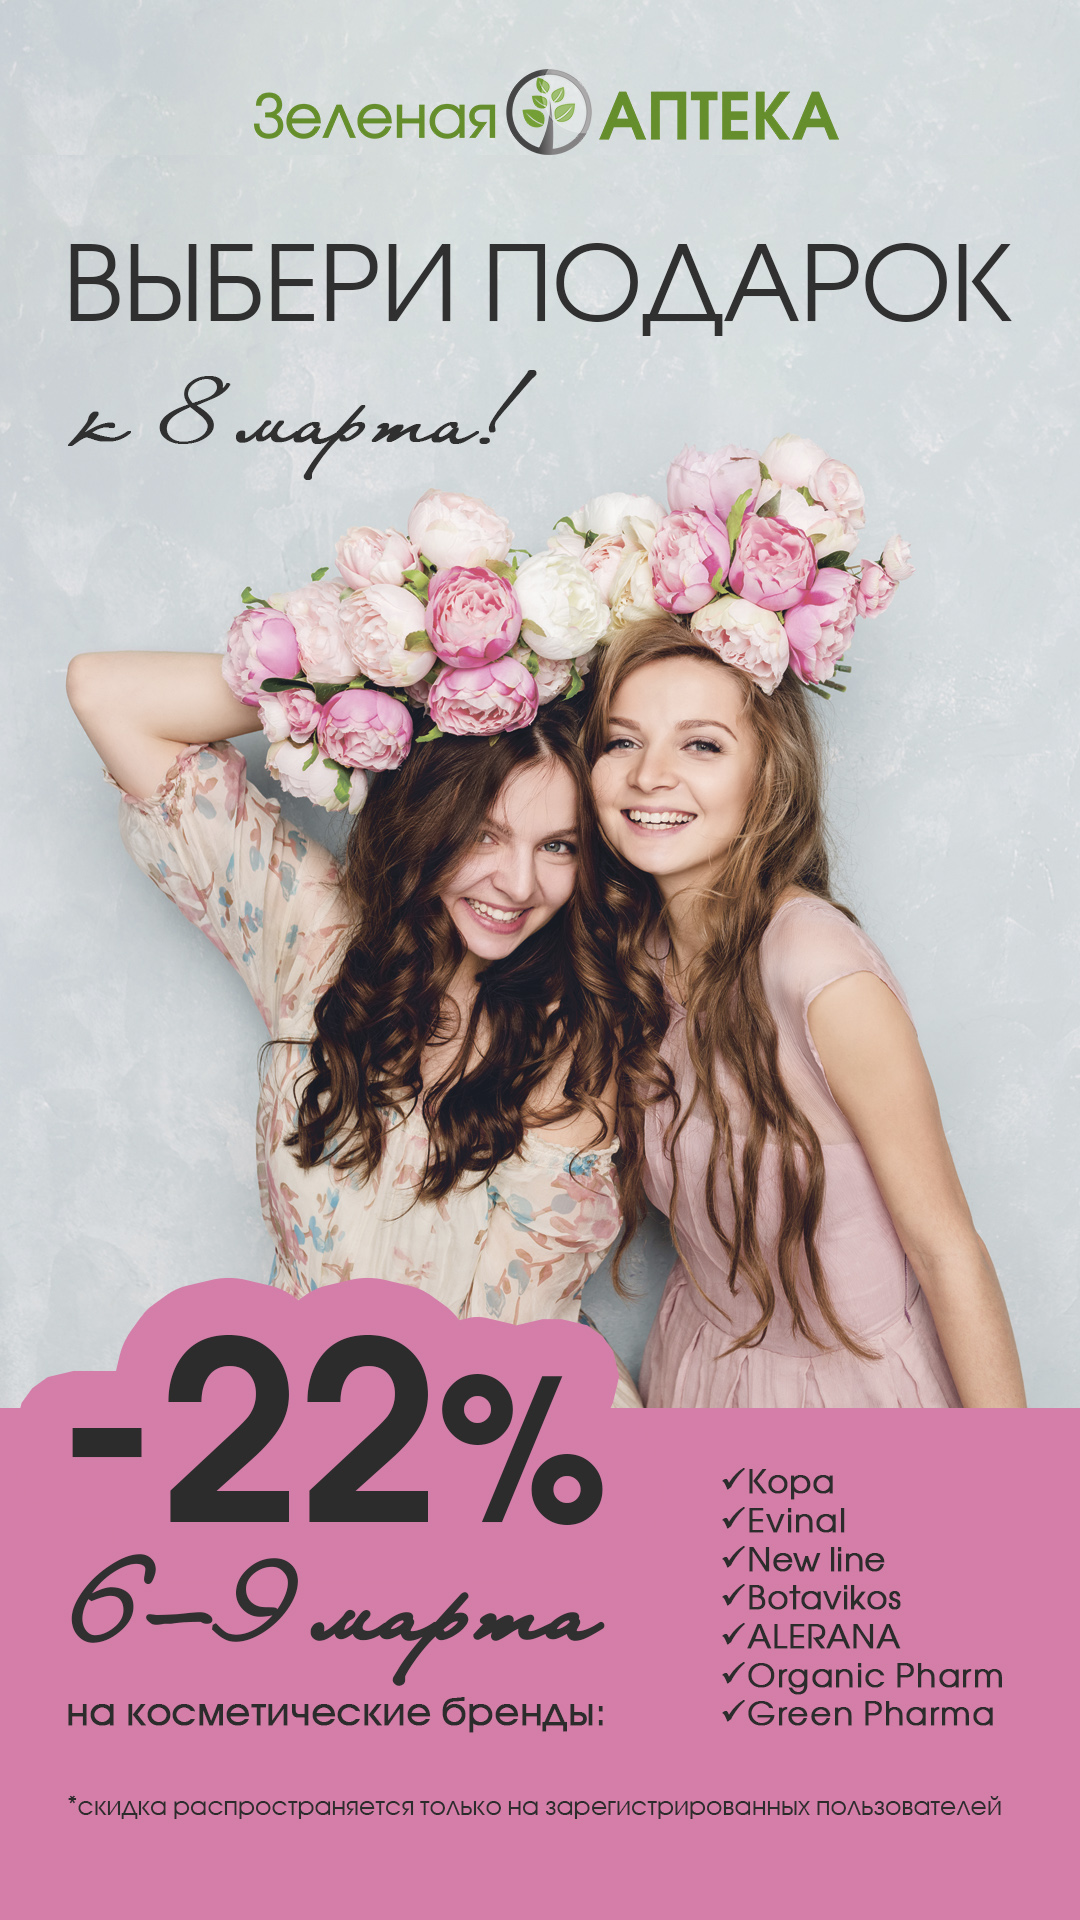 «Зялёная крама» дарит скидку -22% на косметические бренды только 6-9 марта!